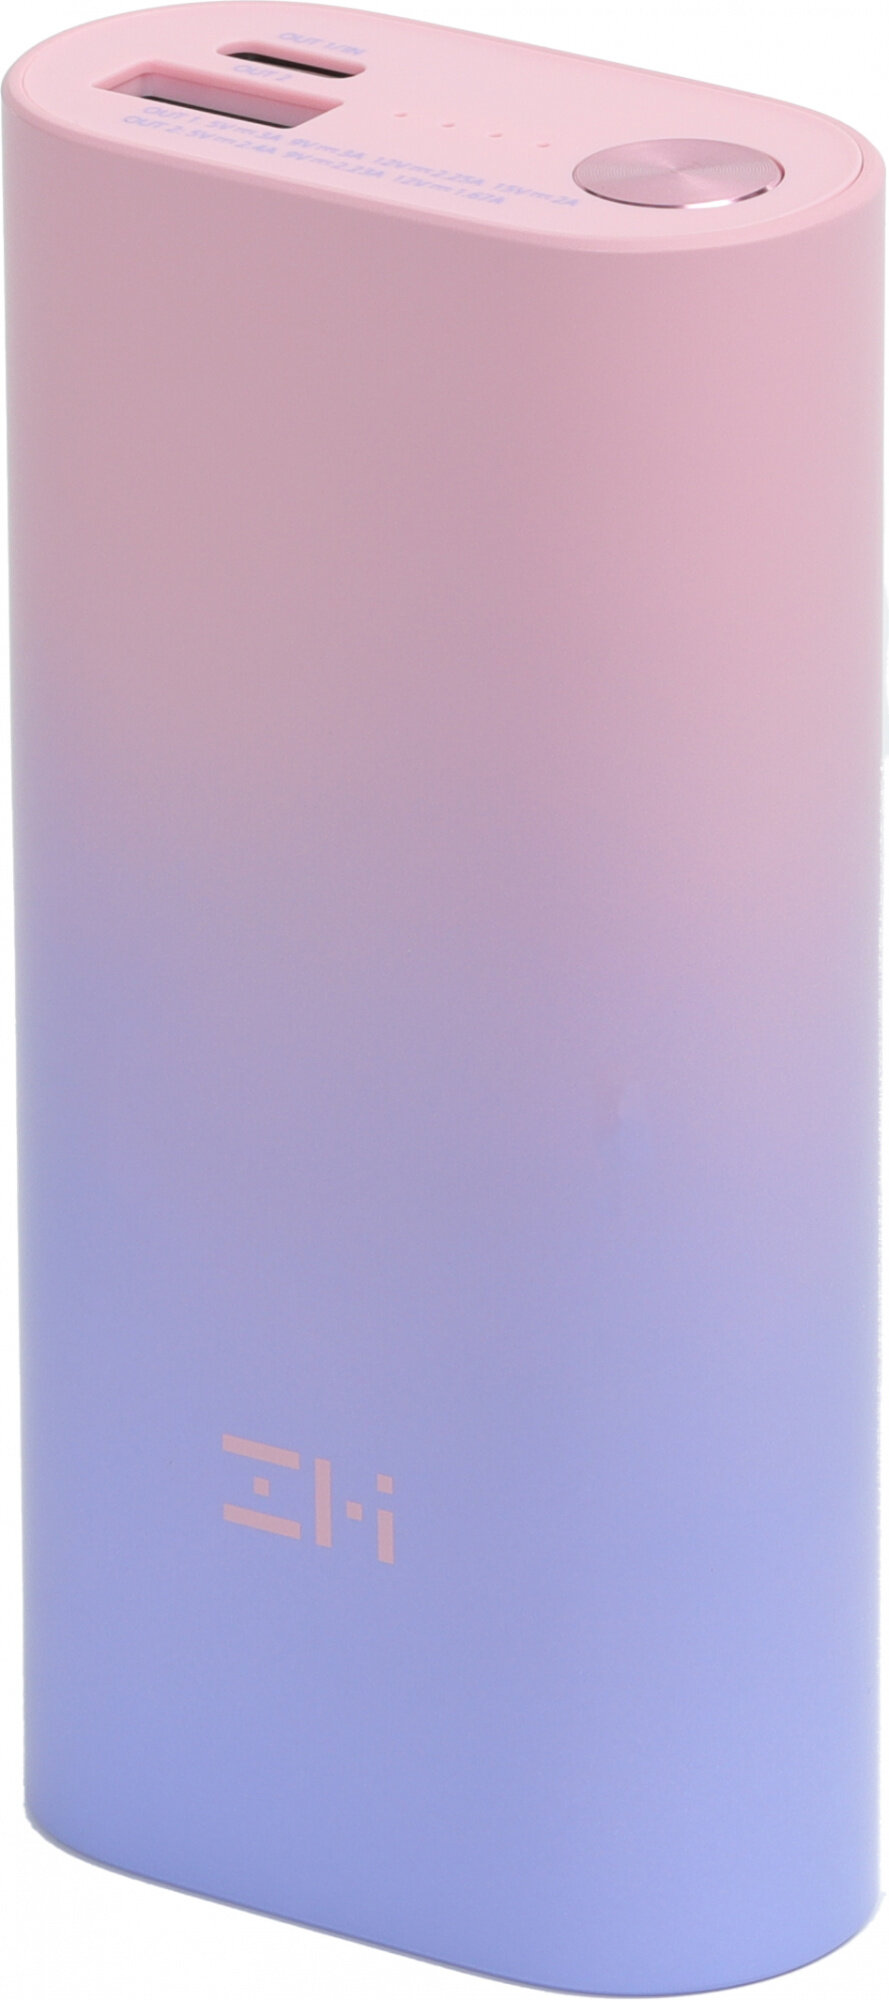 Внешний аккумулятор (Power Bank) Xiaomi PowerBank ZMIQB818, 10000мAч, розовый/фиолетовый [qb818 color] - фото №16